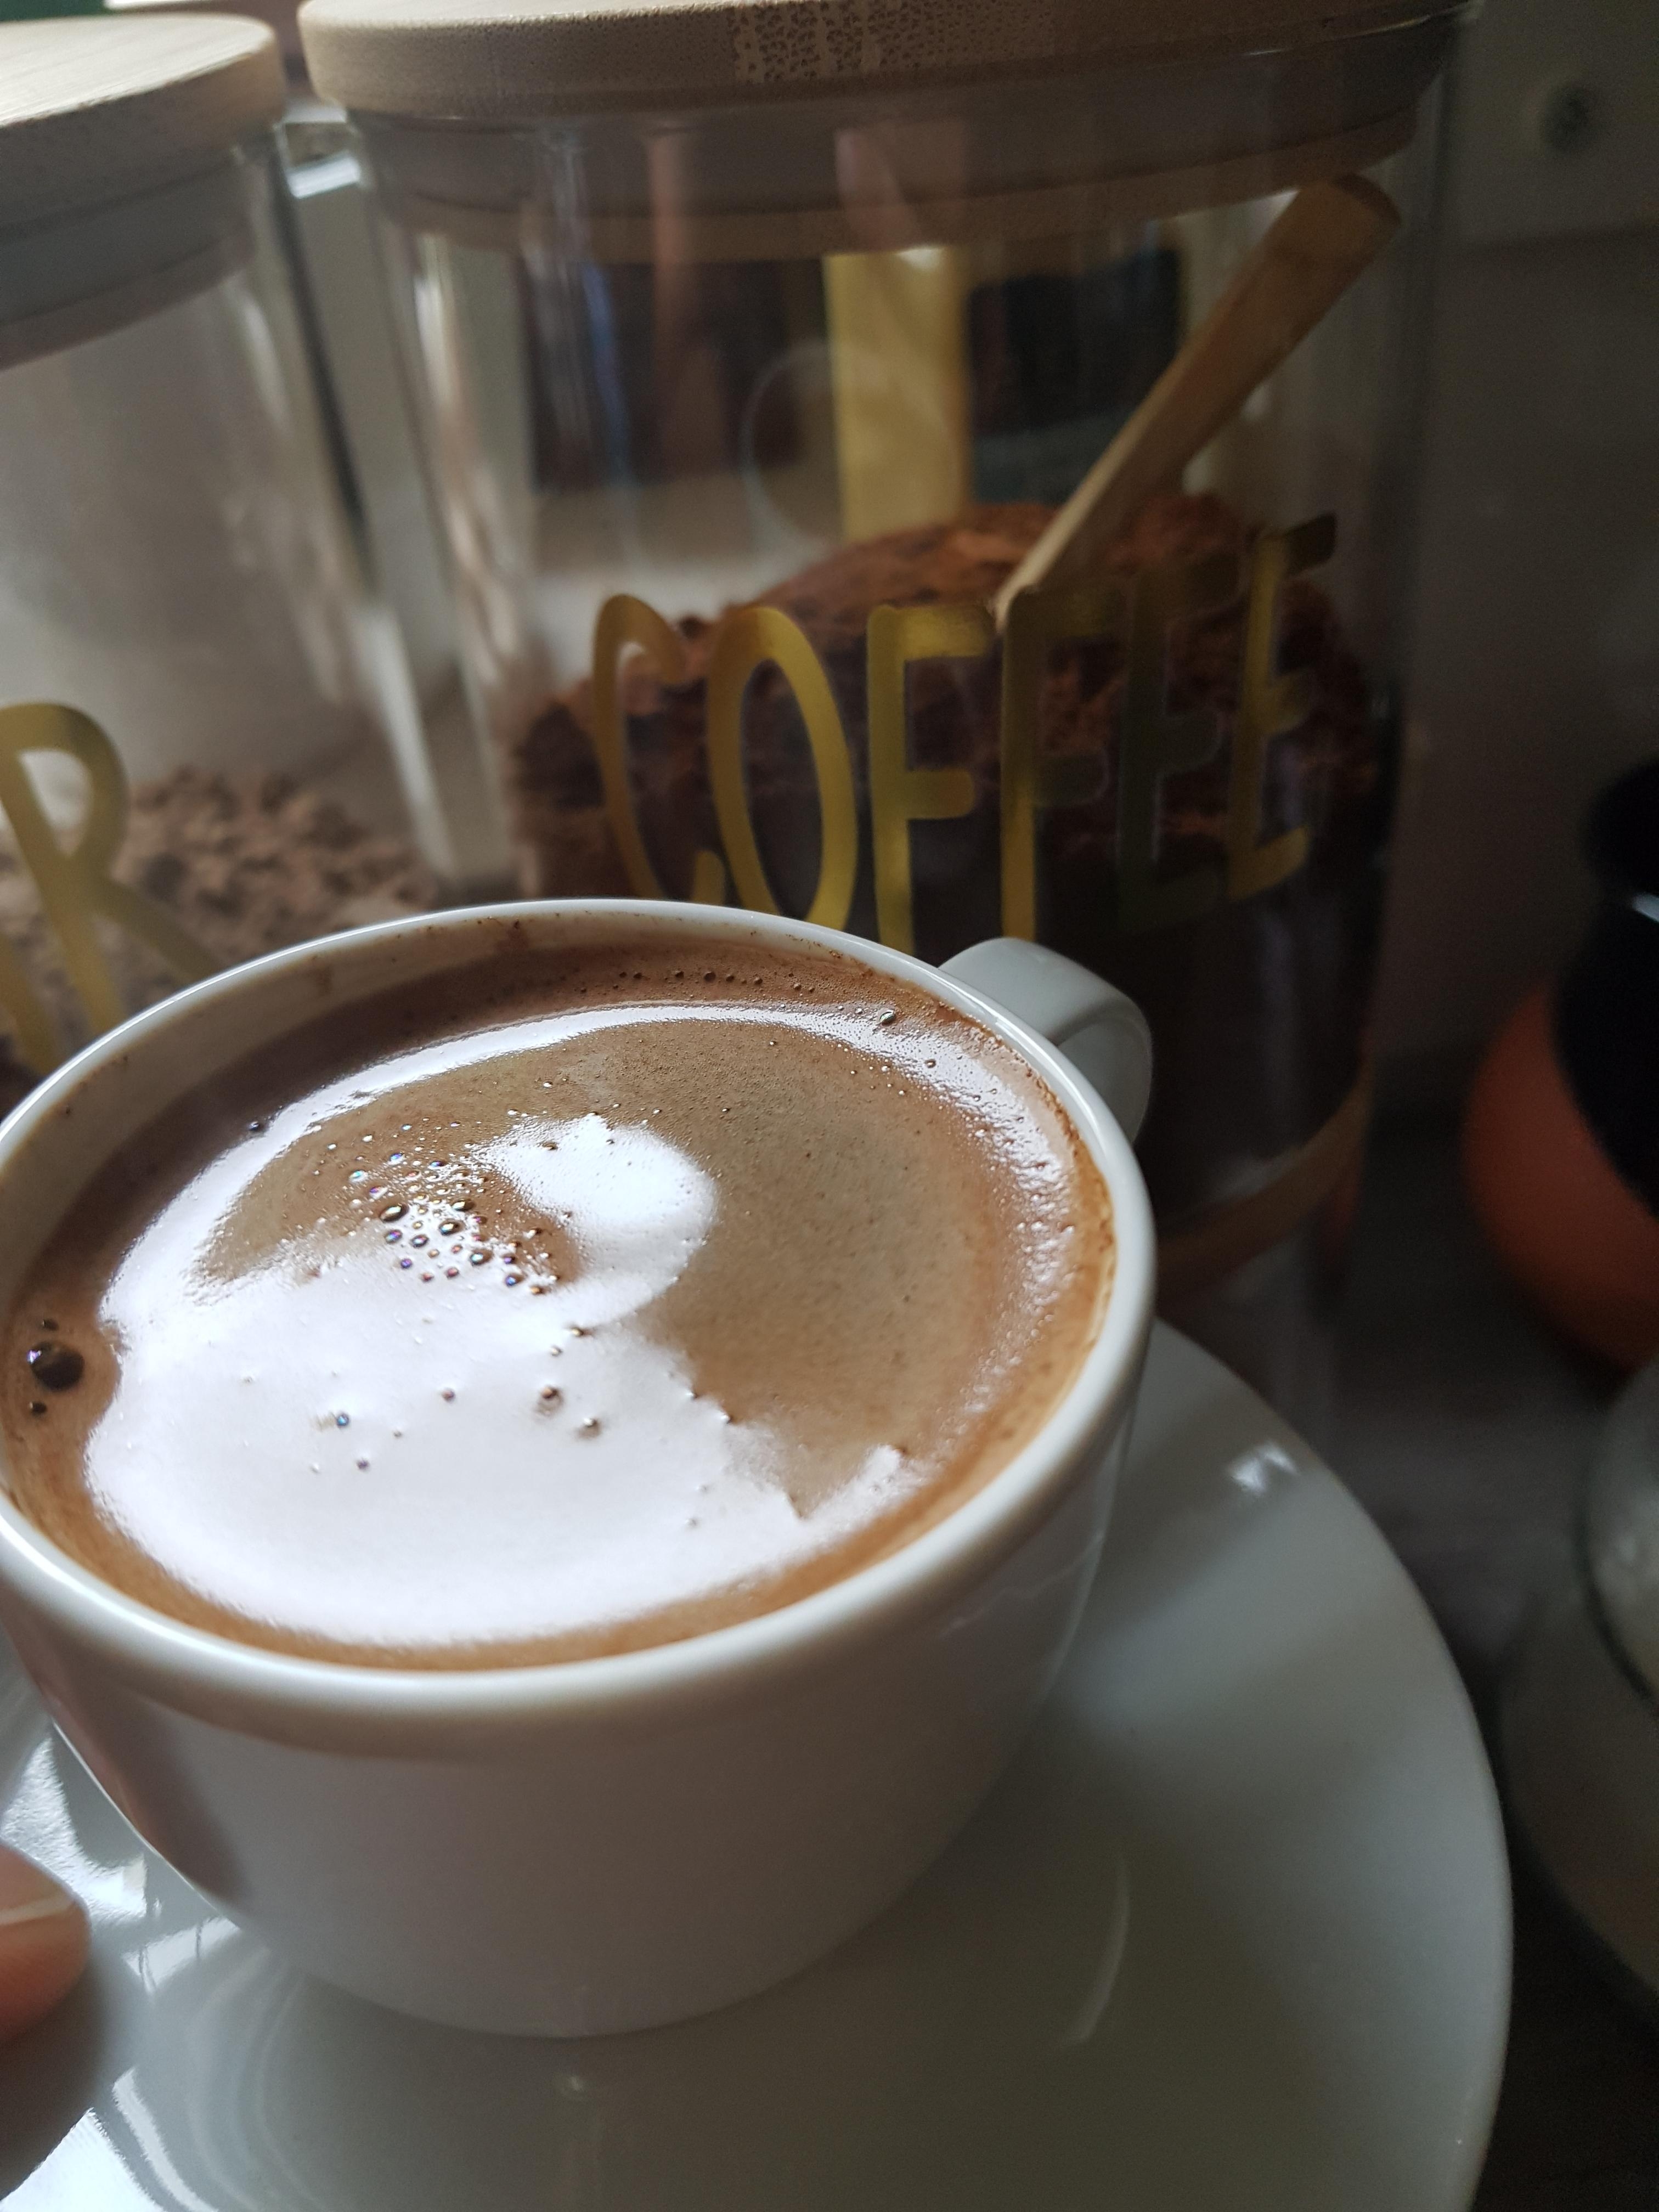 COFFEE - Draußen ist es kalt und es ist Sonntag. 
Ich mag #turkishmokka Kaffee sehr. 
#Herbst #Kalt #Mokka #Kaffee